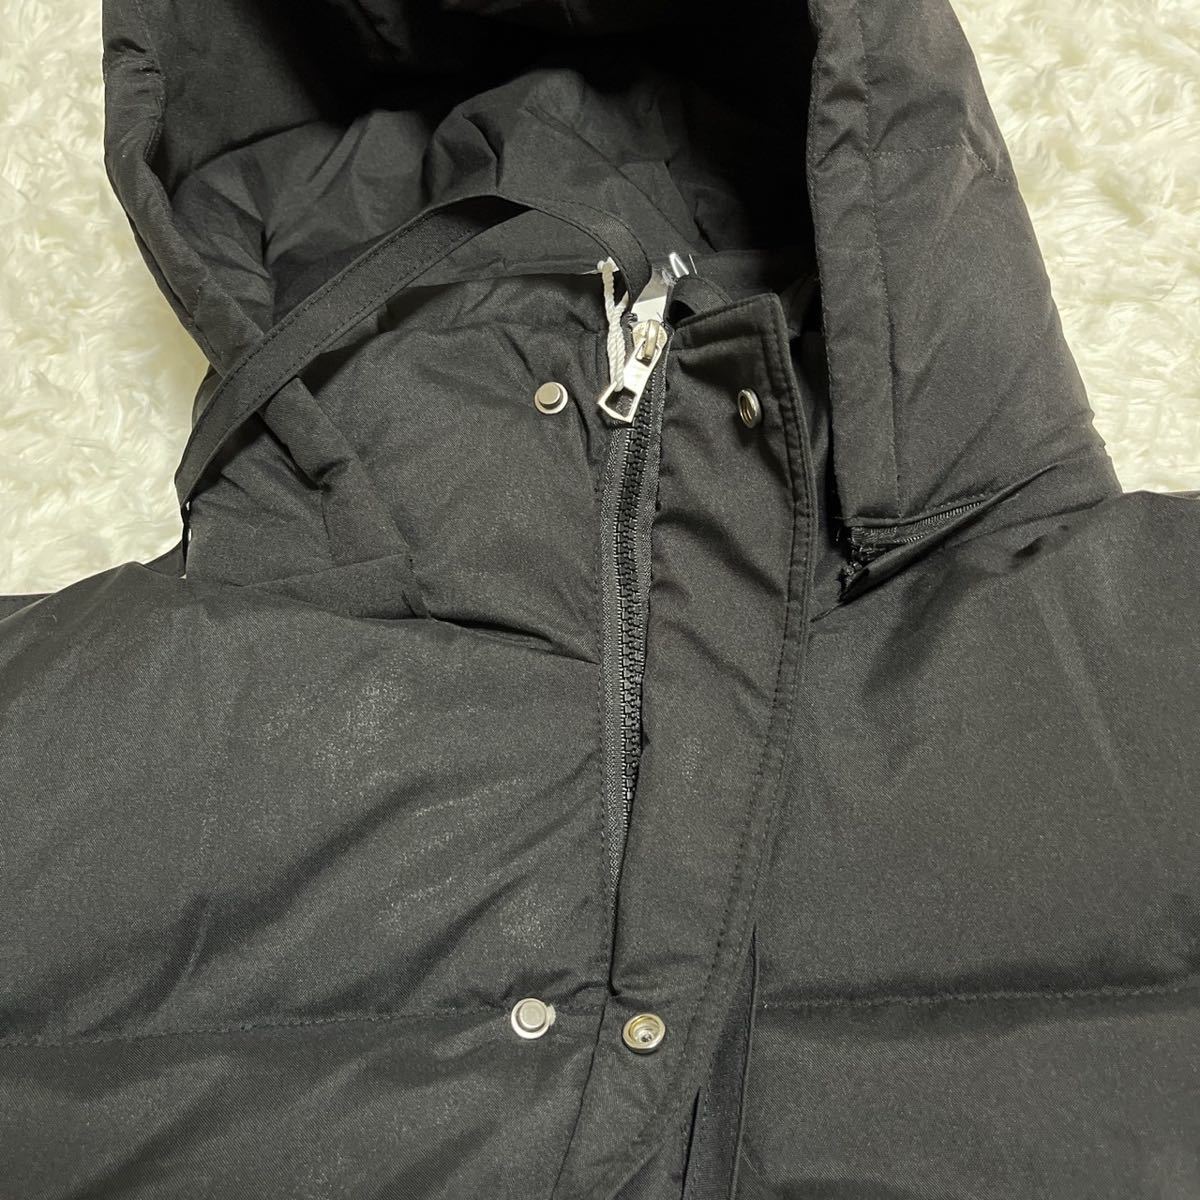 Mサイズ 中綿 ダウンジャケット ダウンコート フード付き アウター ブラック 497 軽量 保温 防寒コート